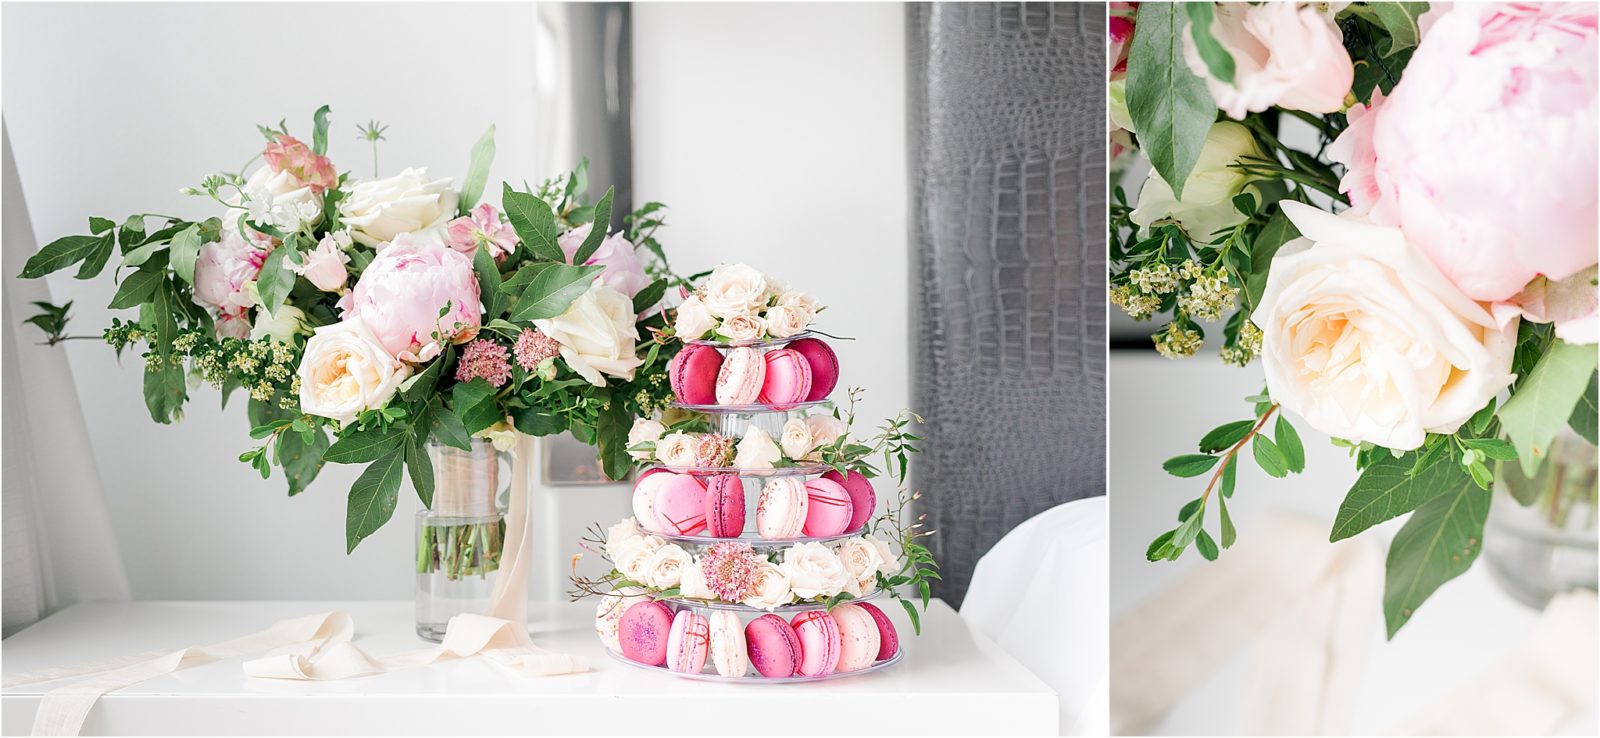 Bridal Bouquet and macarons at W Hotel Wedding By Dallas Wedding Photographer Jillian Hogan 